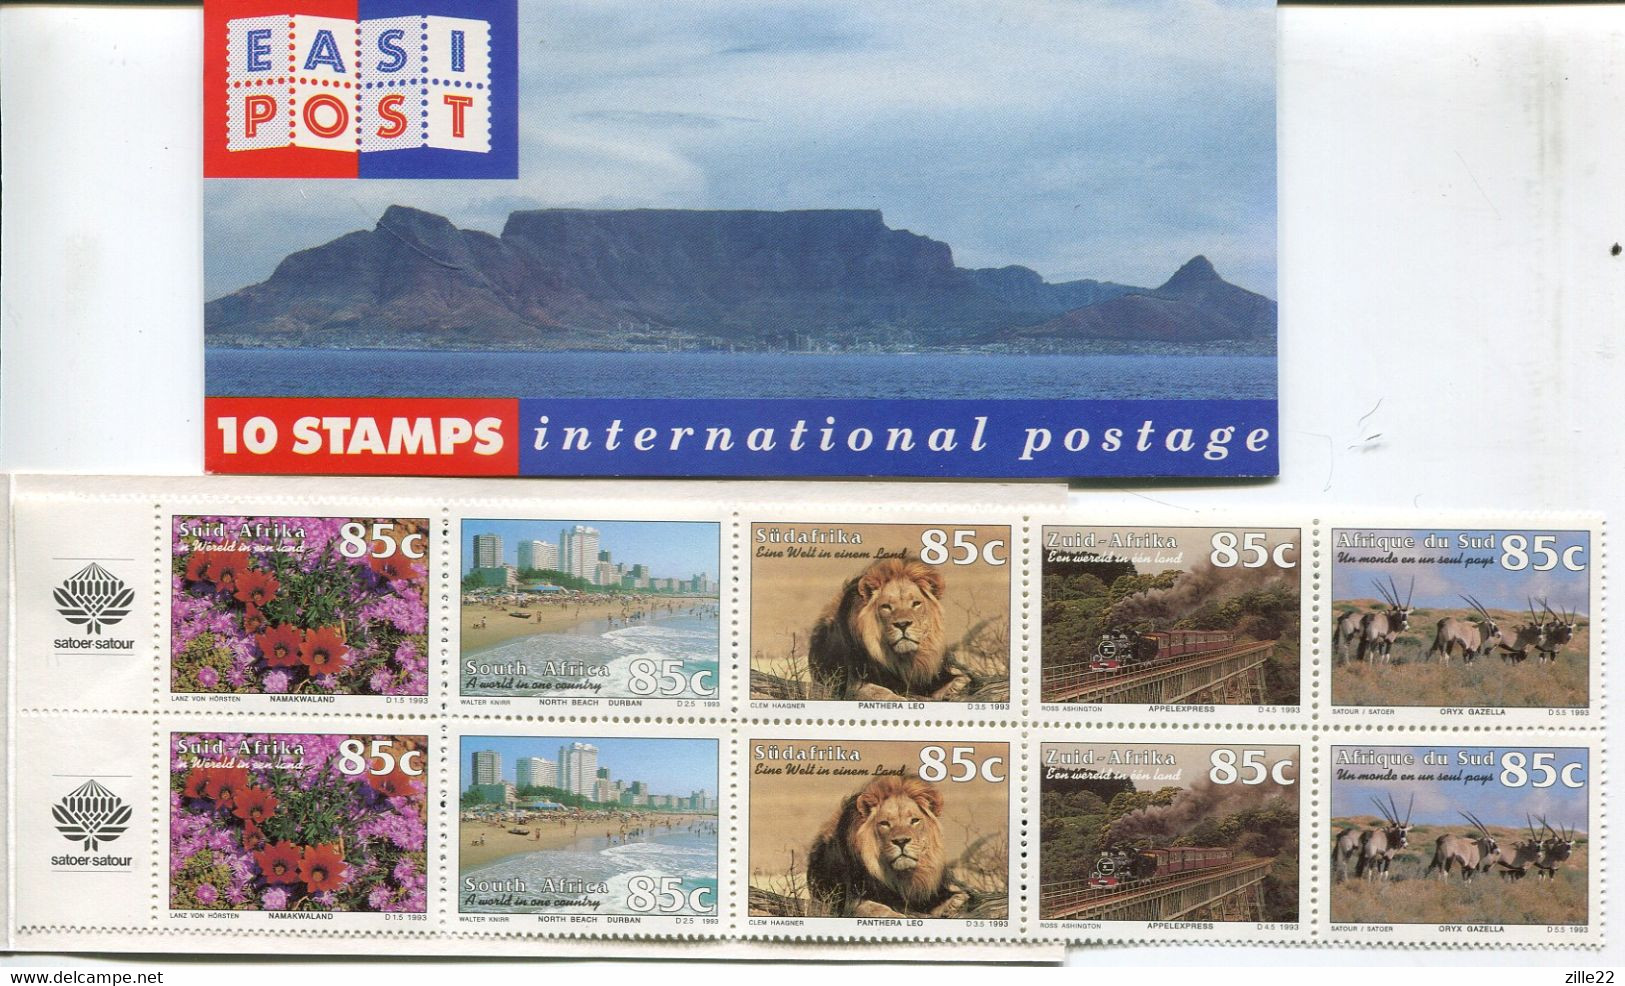 Südafrika South Afica Markenheftchen Booklet Mi# 916-6 Postfrisch/MNH - Tourism, Capetown Table Mountain Cover - Markenheftchen